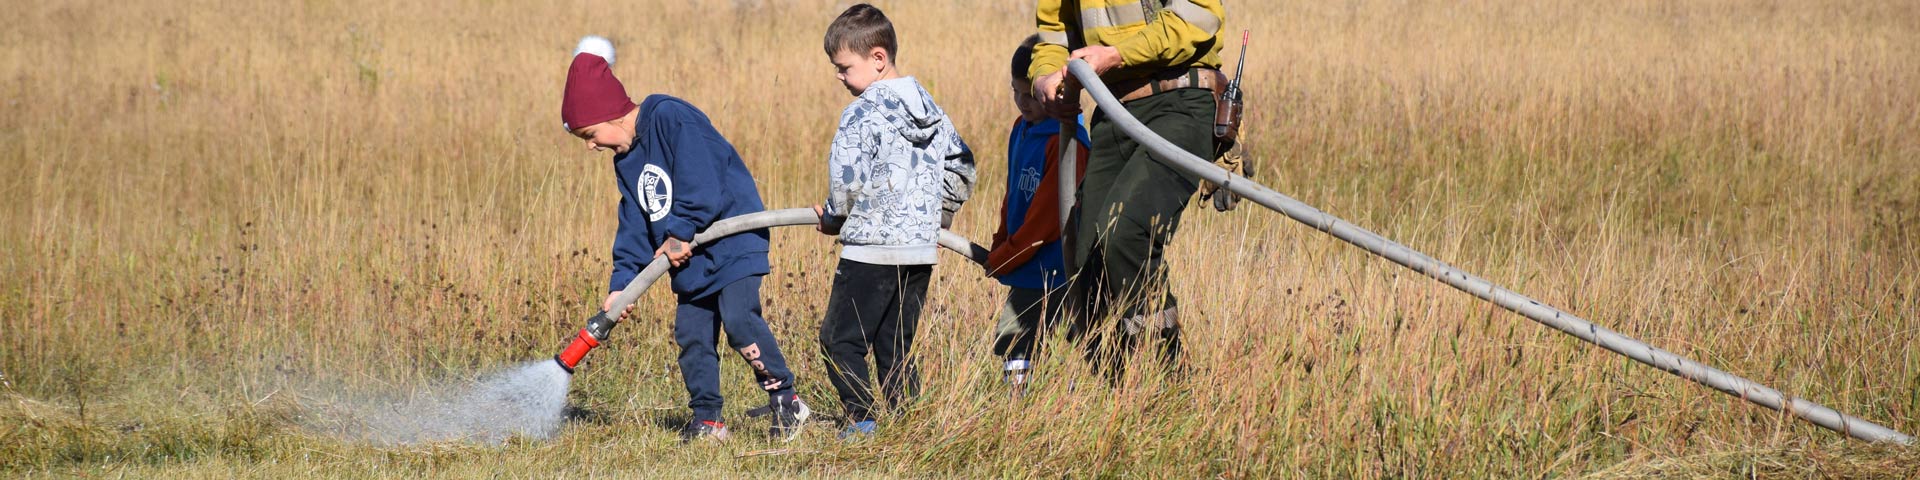 Un membre de l’équipe des pompiers aide trois enfants à tenir un tuyau d’incendie pendant qu’ils arrosent l’herbe.